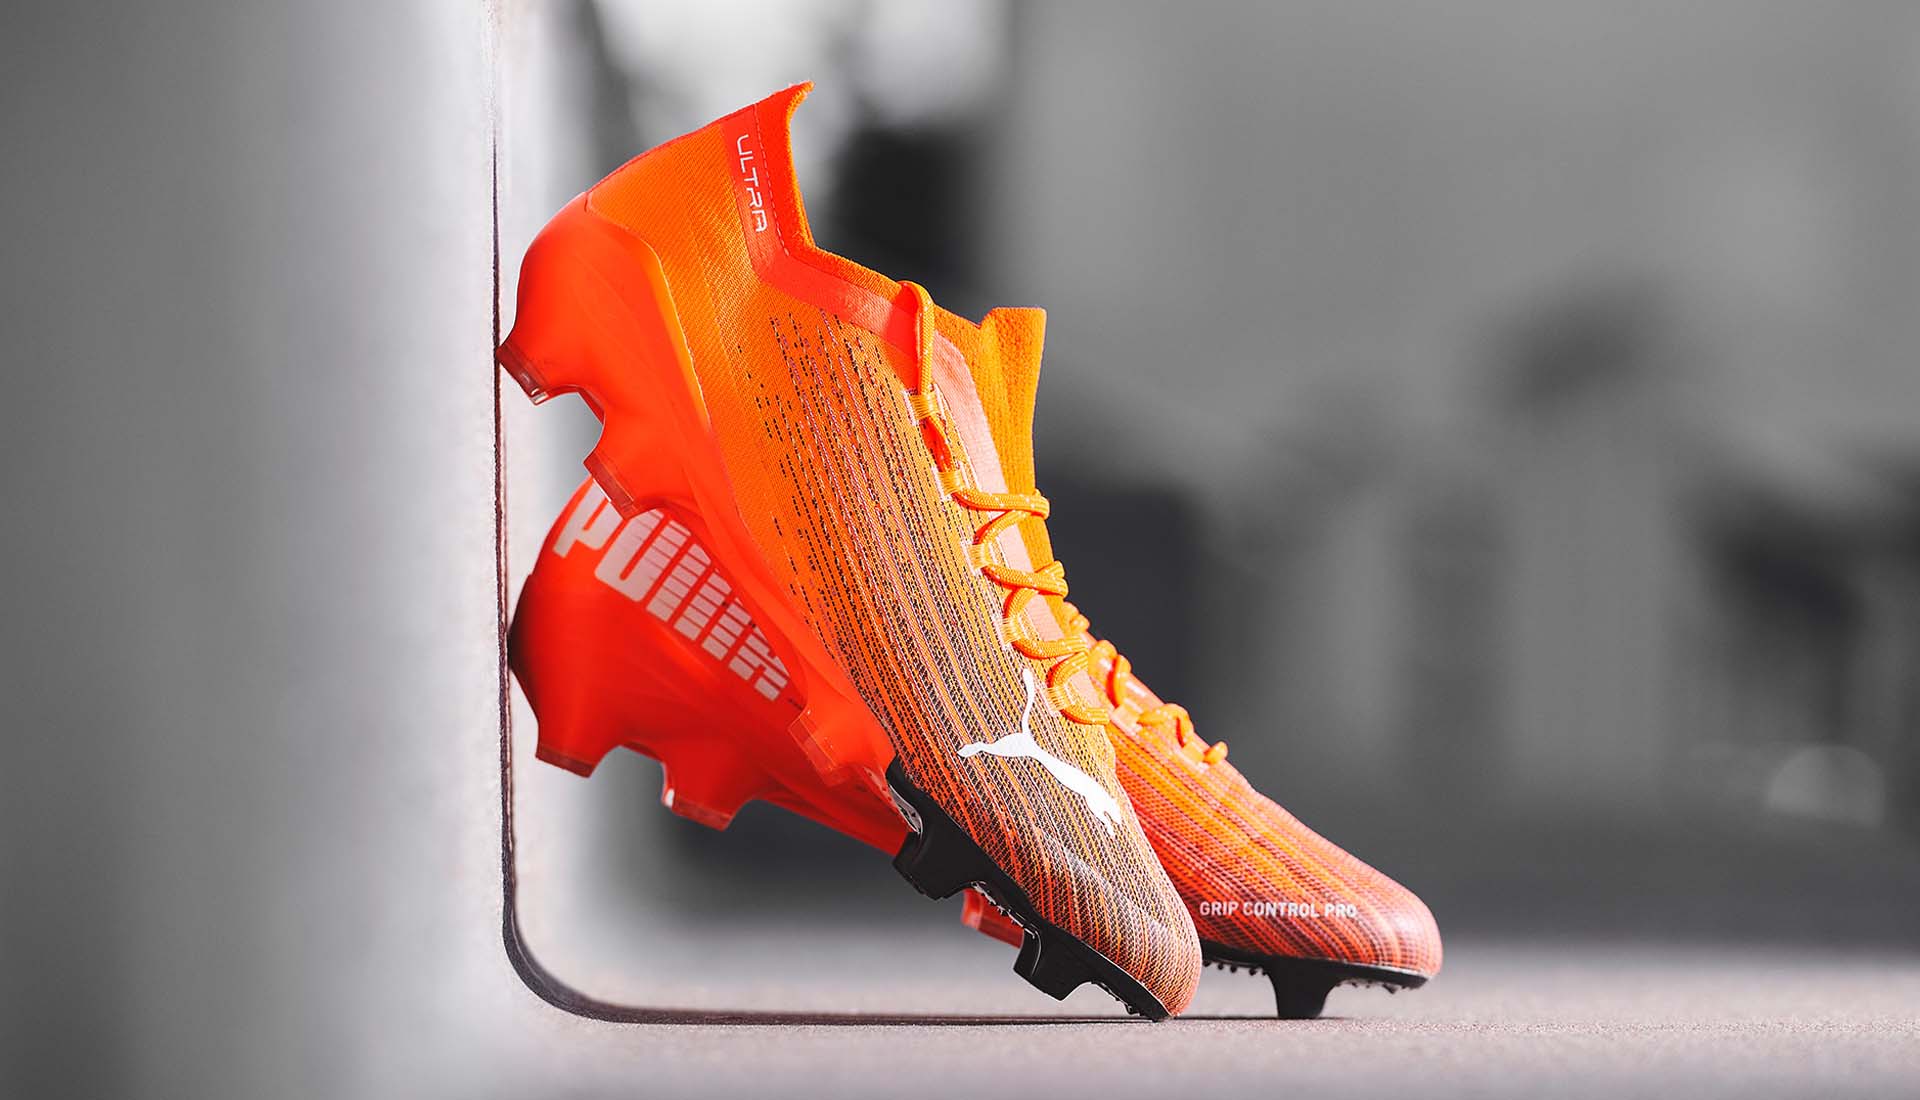 Thiết kế đẹp mắt, đơn giản khiến Puma Ultra được nhiều cầu thủ yêu thích